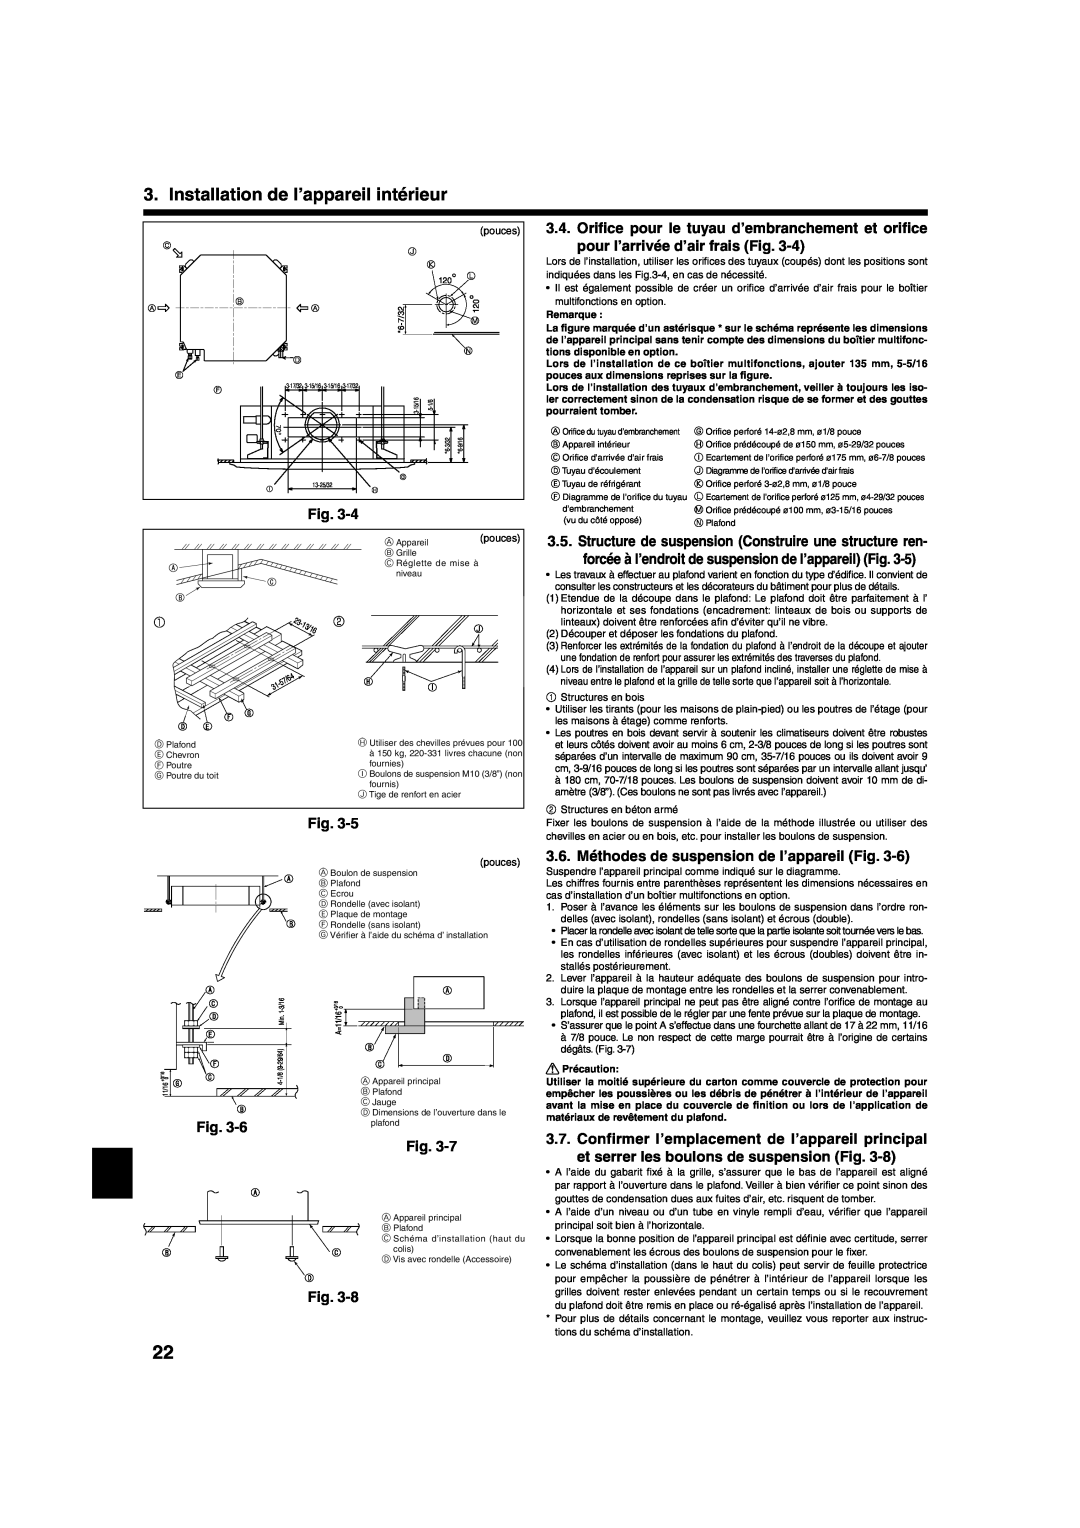 Mitsumi electronic PLA-ABA 3.6. Méthodes de suspension de l’appareil Fig, et serrer les boulons de suspension Fig, pouces 